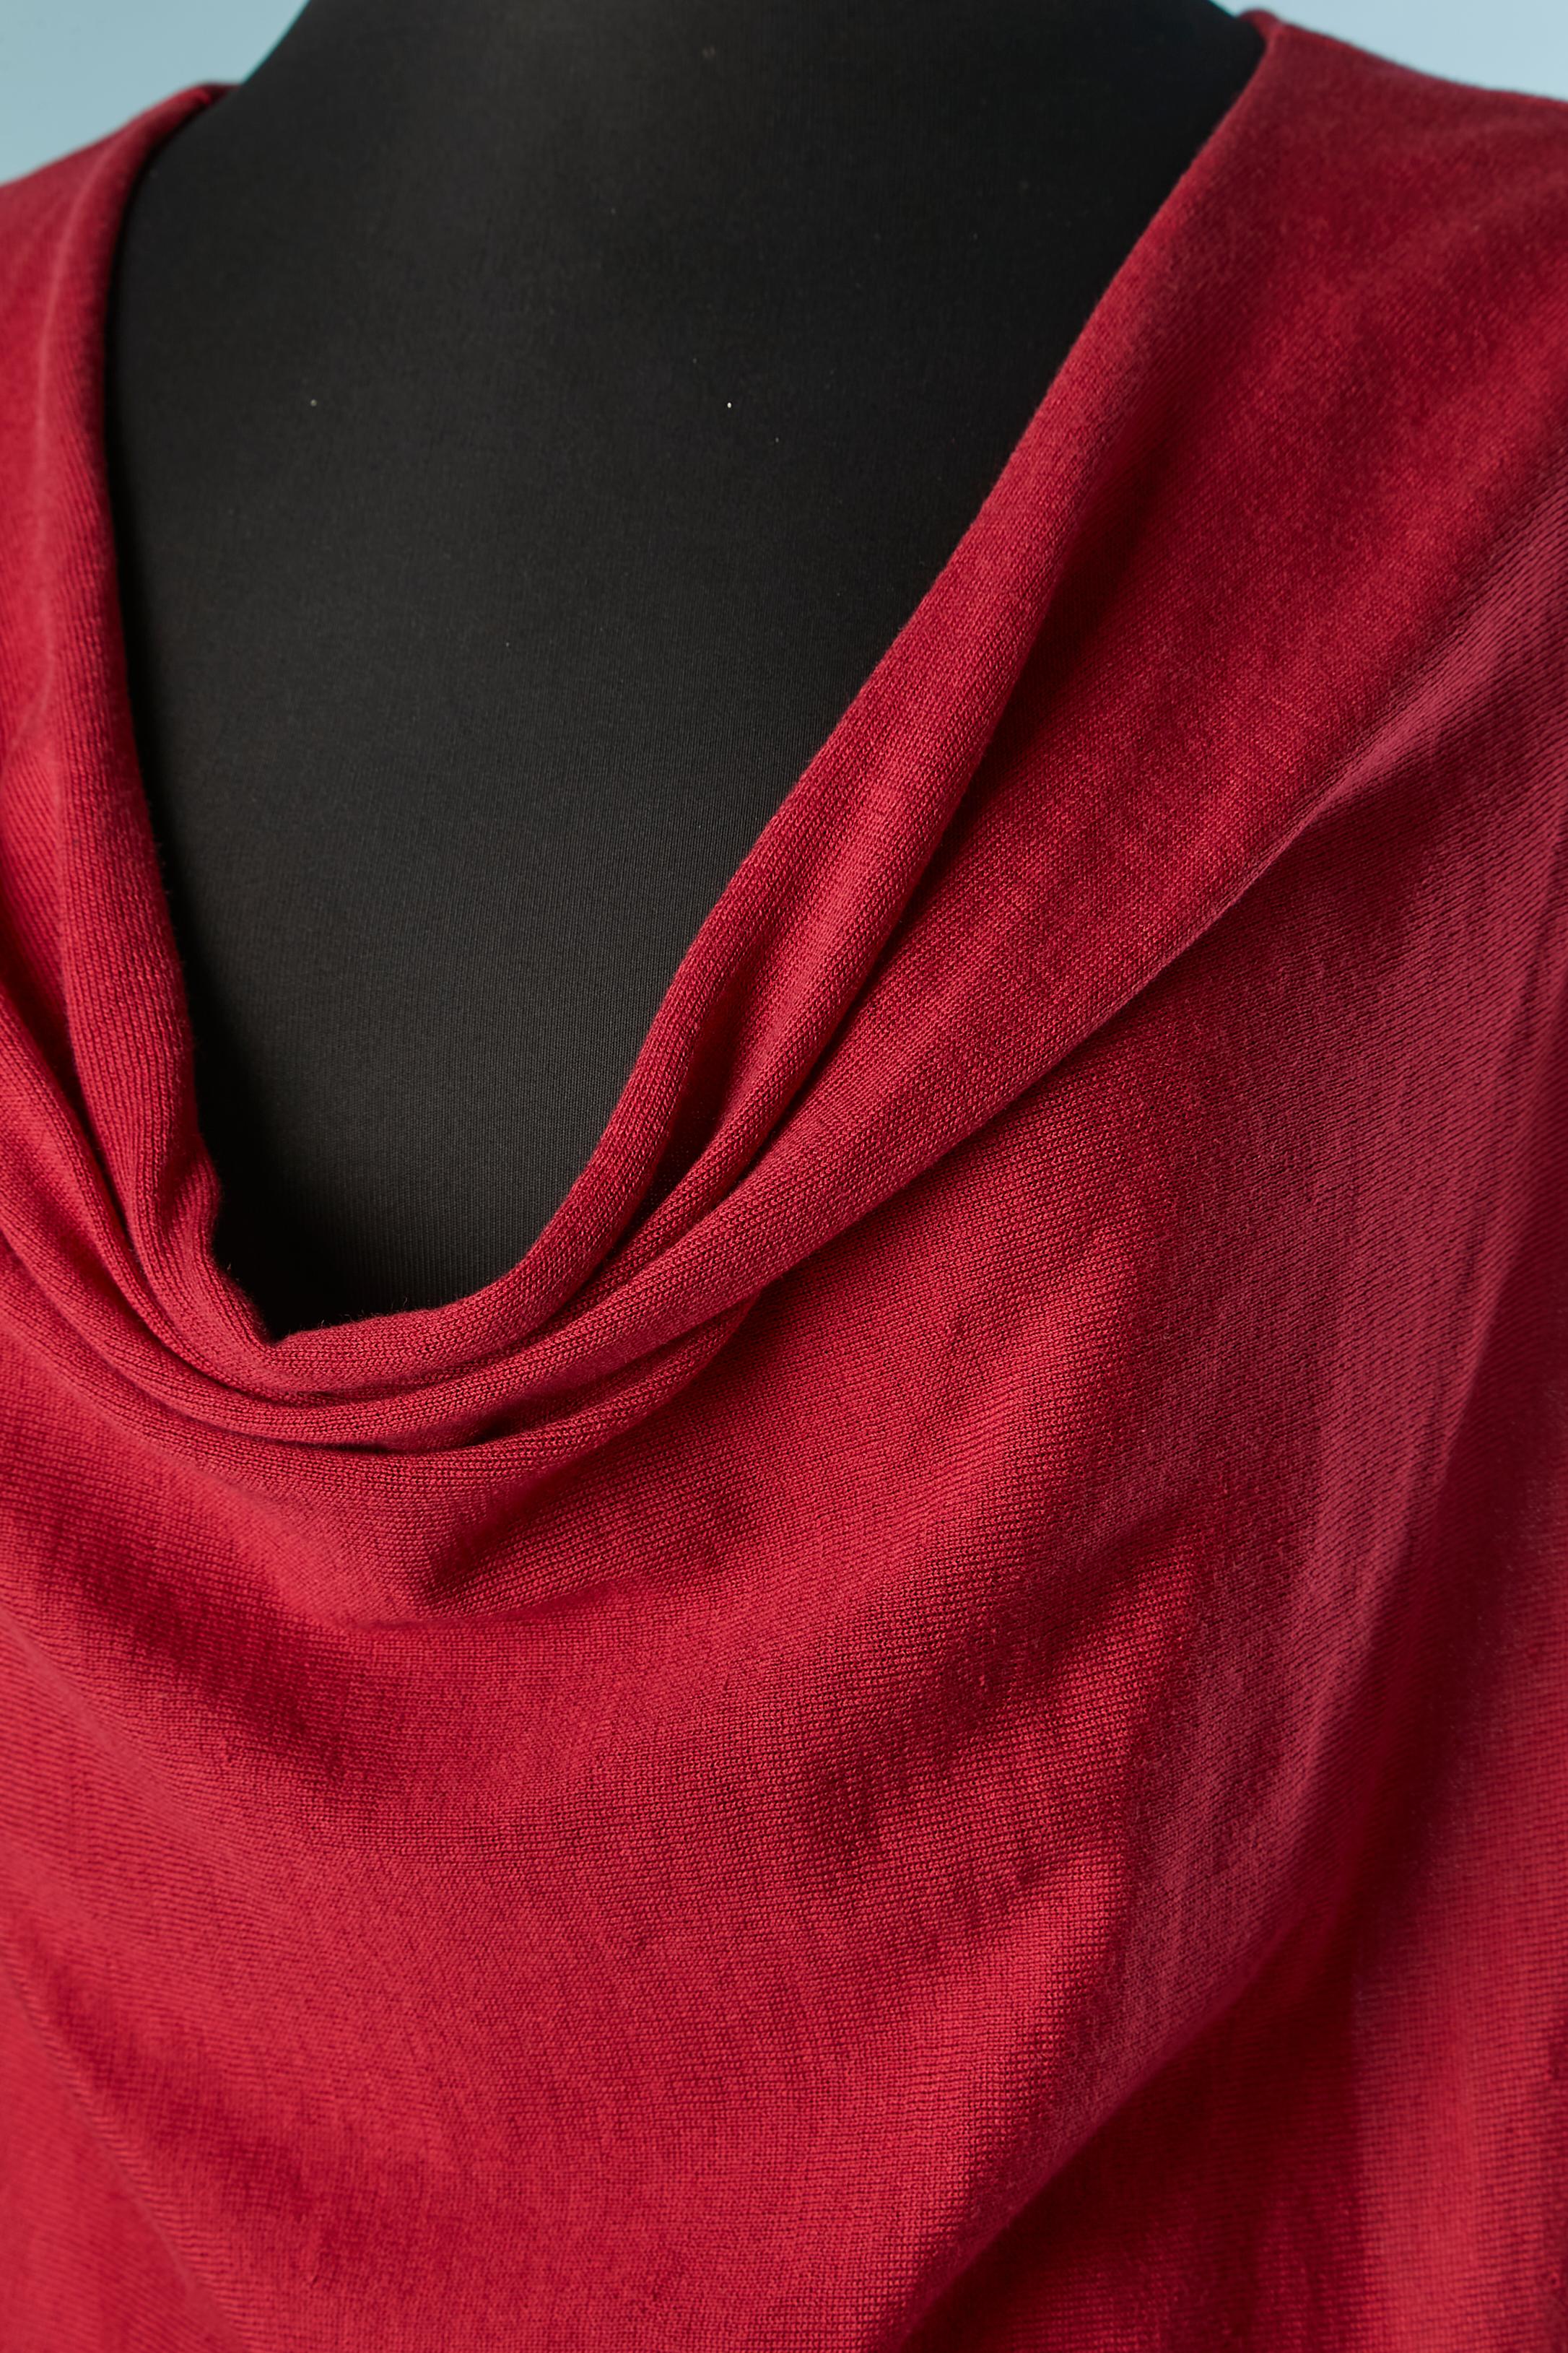 Pull sans manches en soie et coton rouge. Composition du tricot : 50% coton, 50% soie.
Drapée sur le buste. 
TAILLE L 